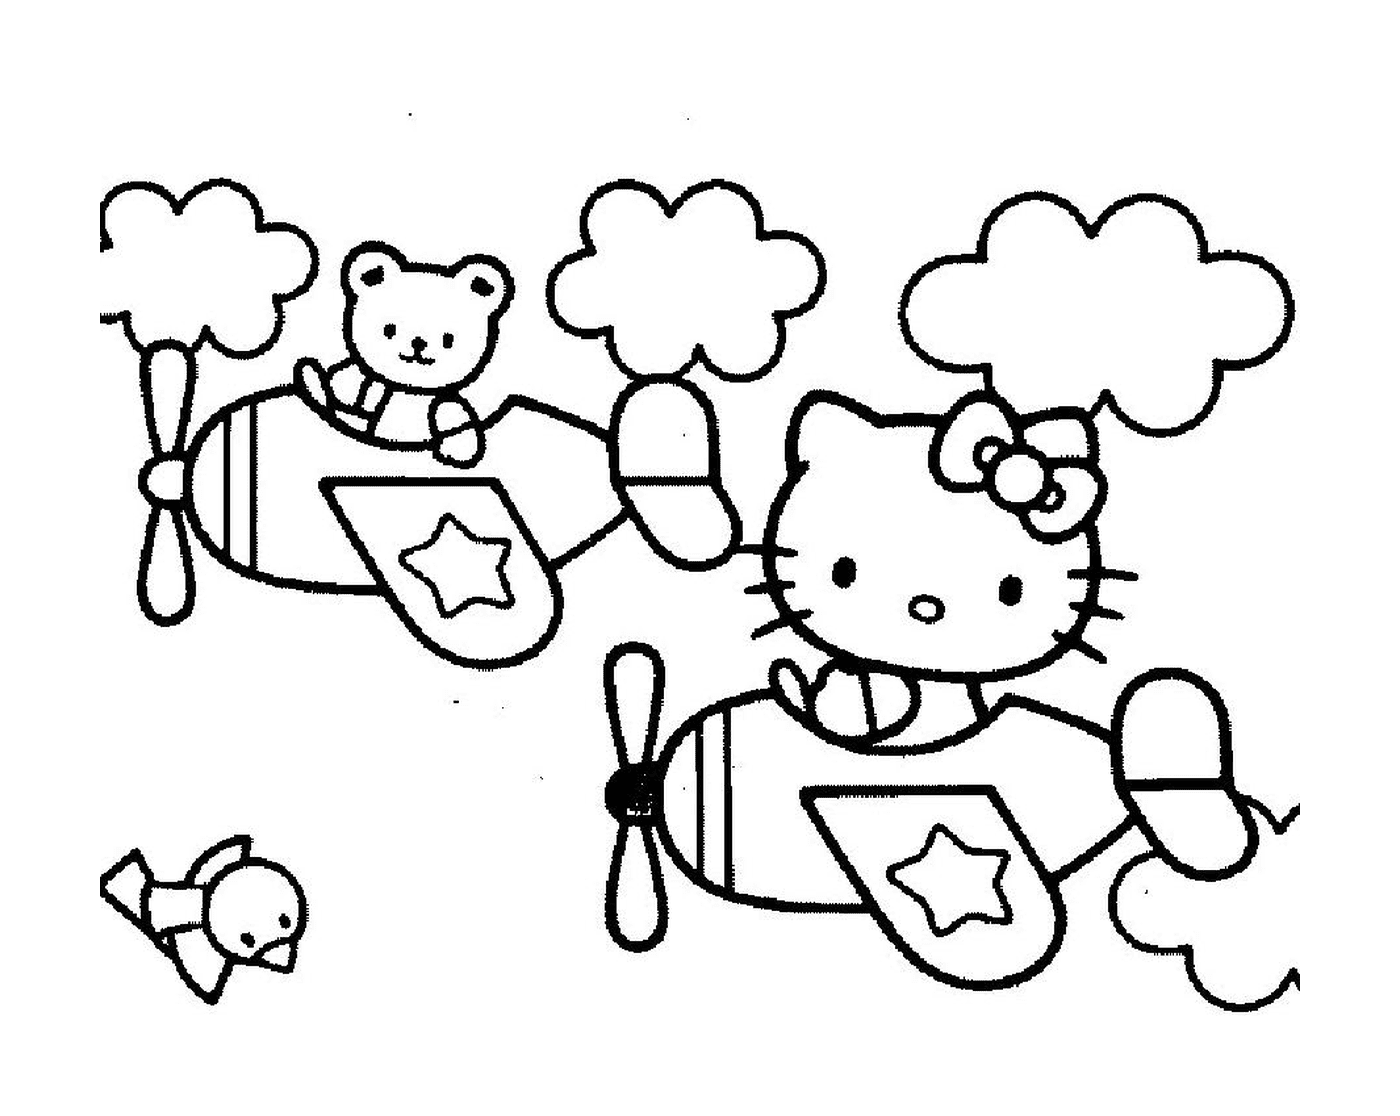  Impresión de Hello Kitty a imprimir 